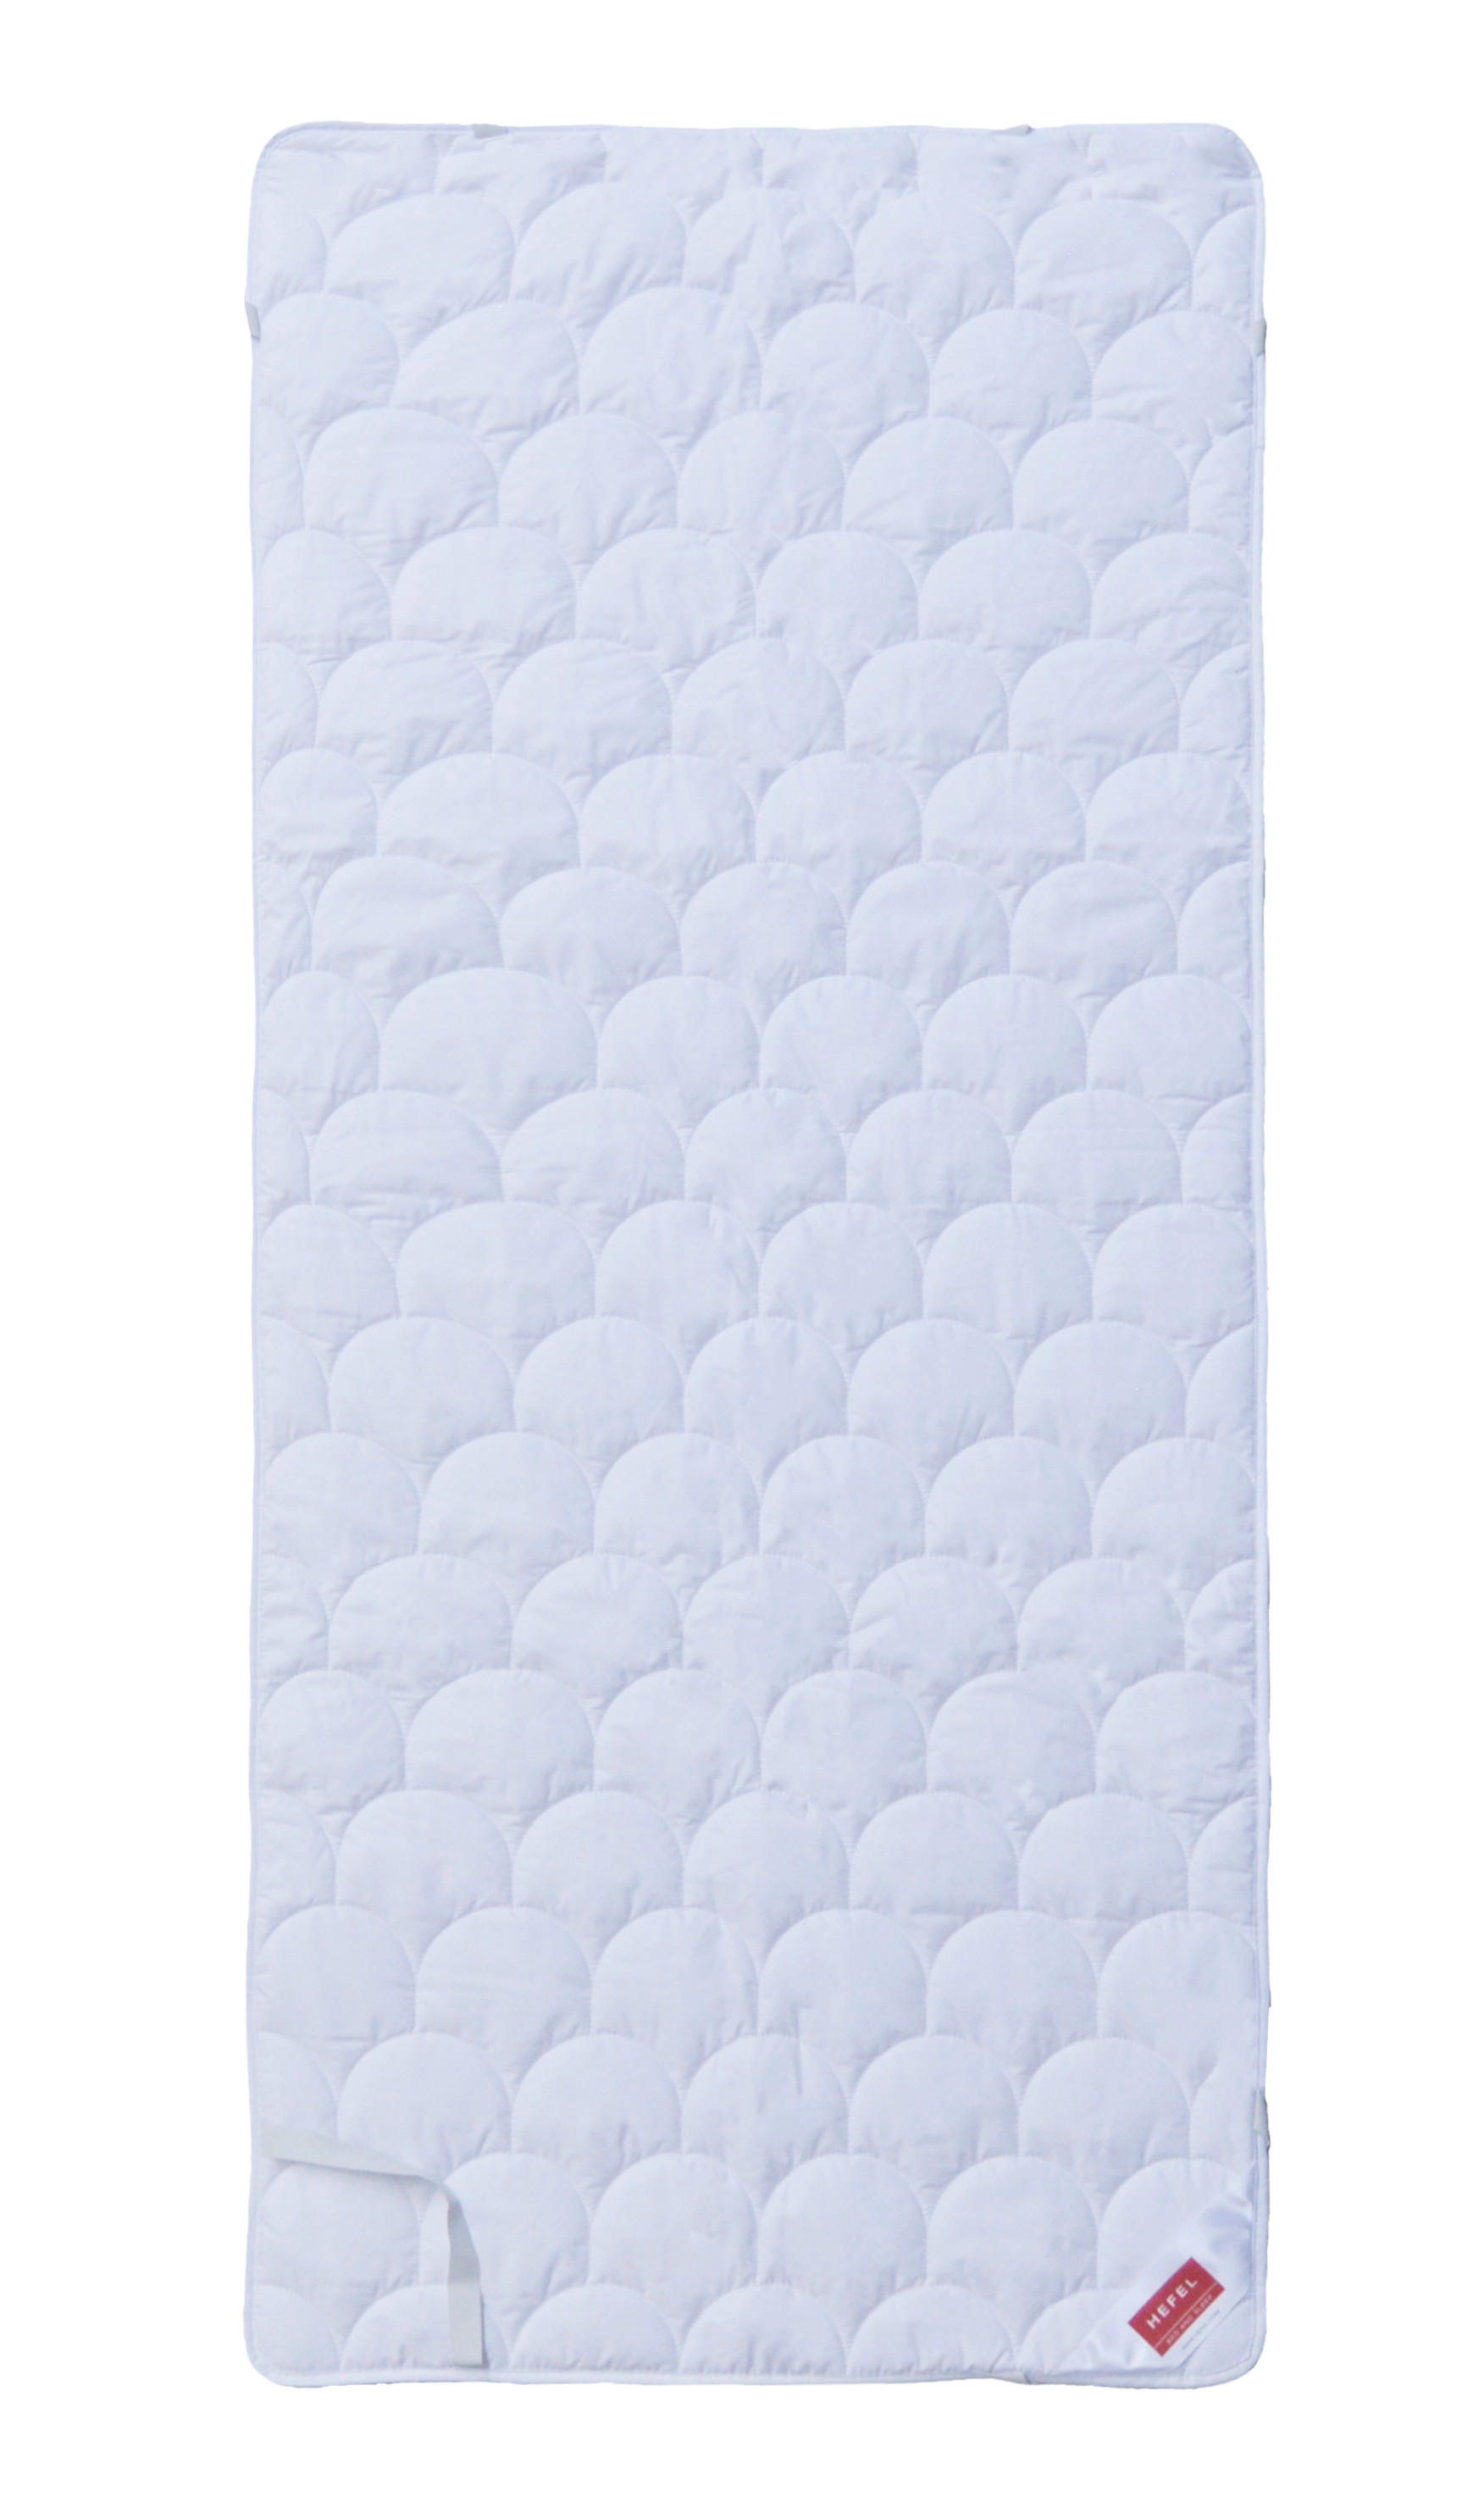 Hefel Textil OCHRANNÝ POVLAK NA MATRACI, 90/200 cm - bílá